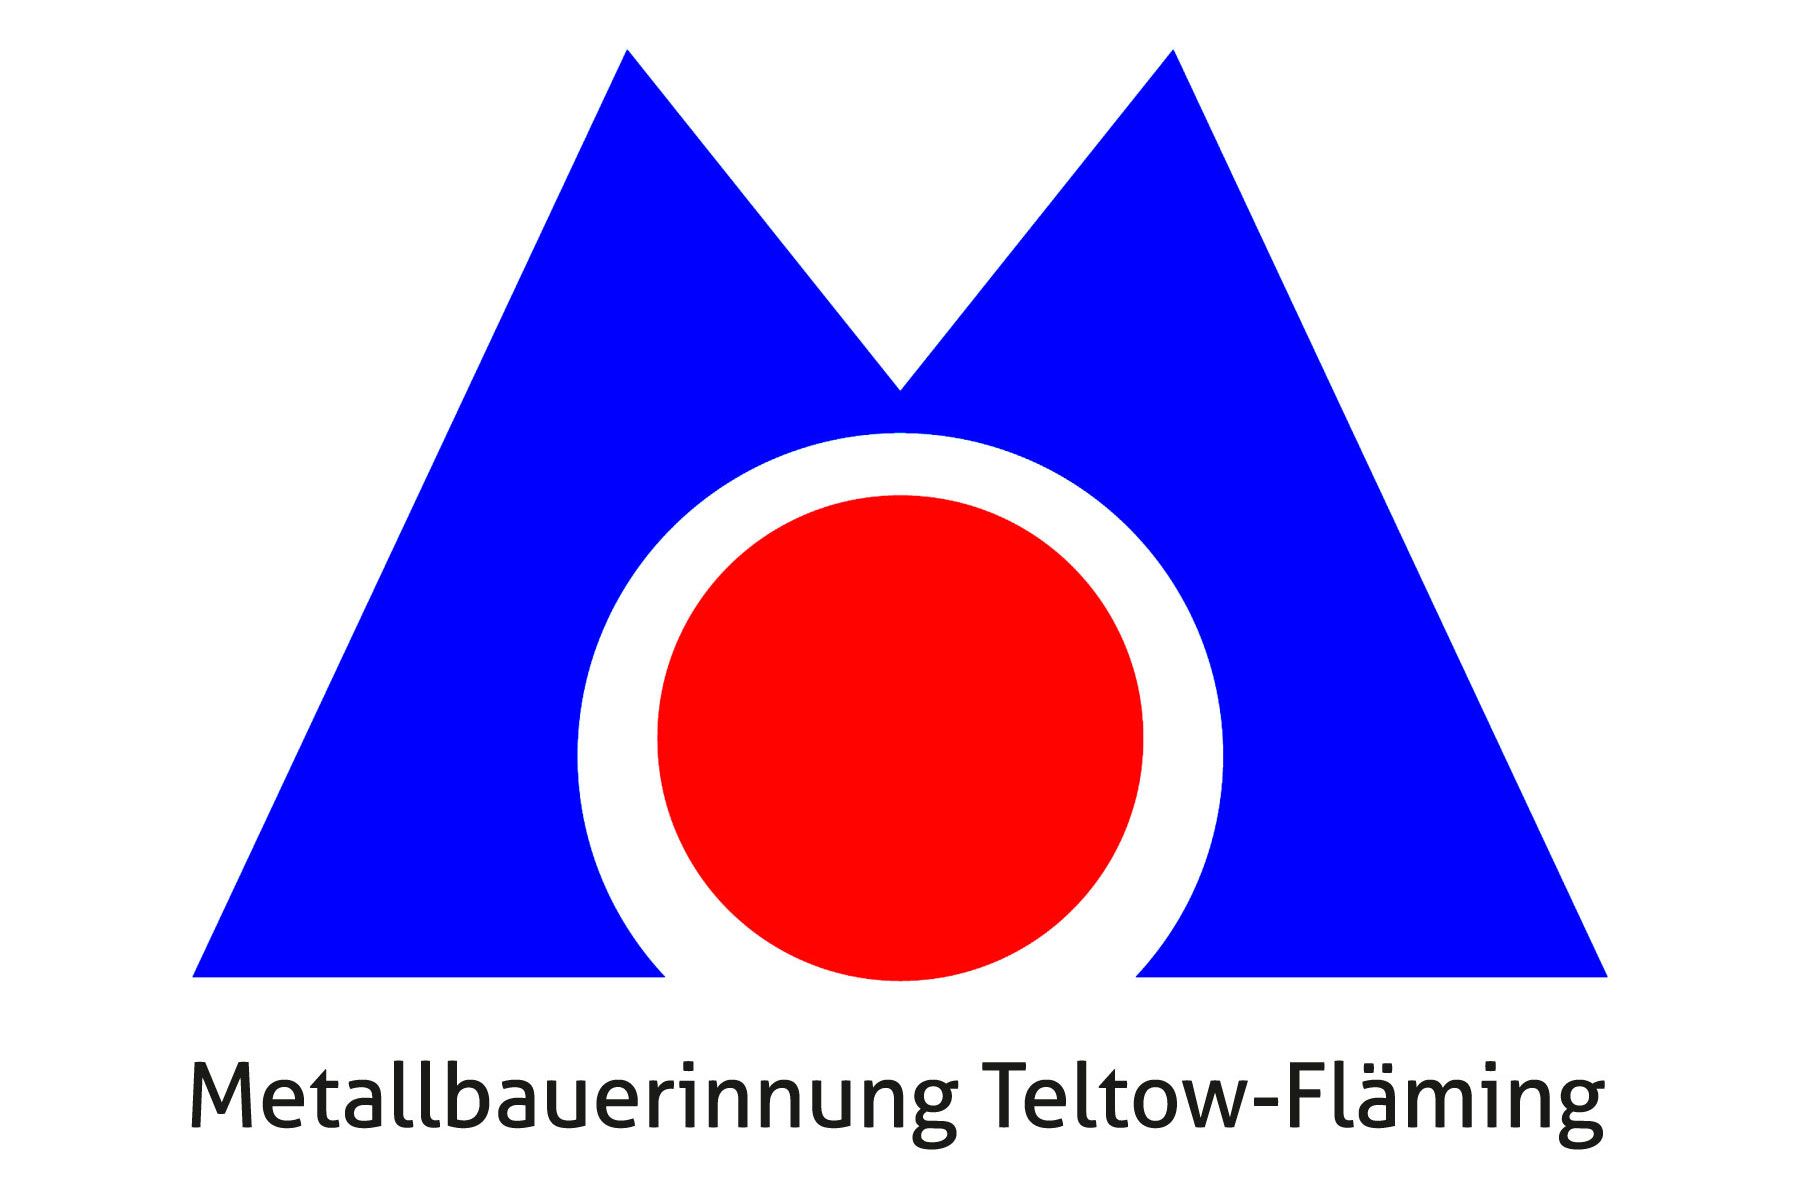 Mitglied der Metallbauerinnung Teltow-Fläming